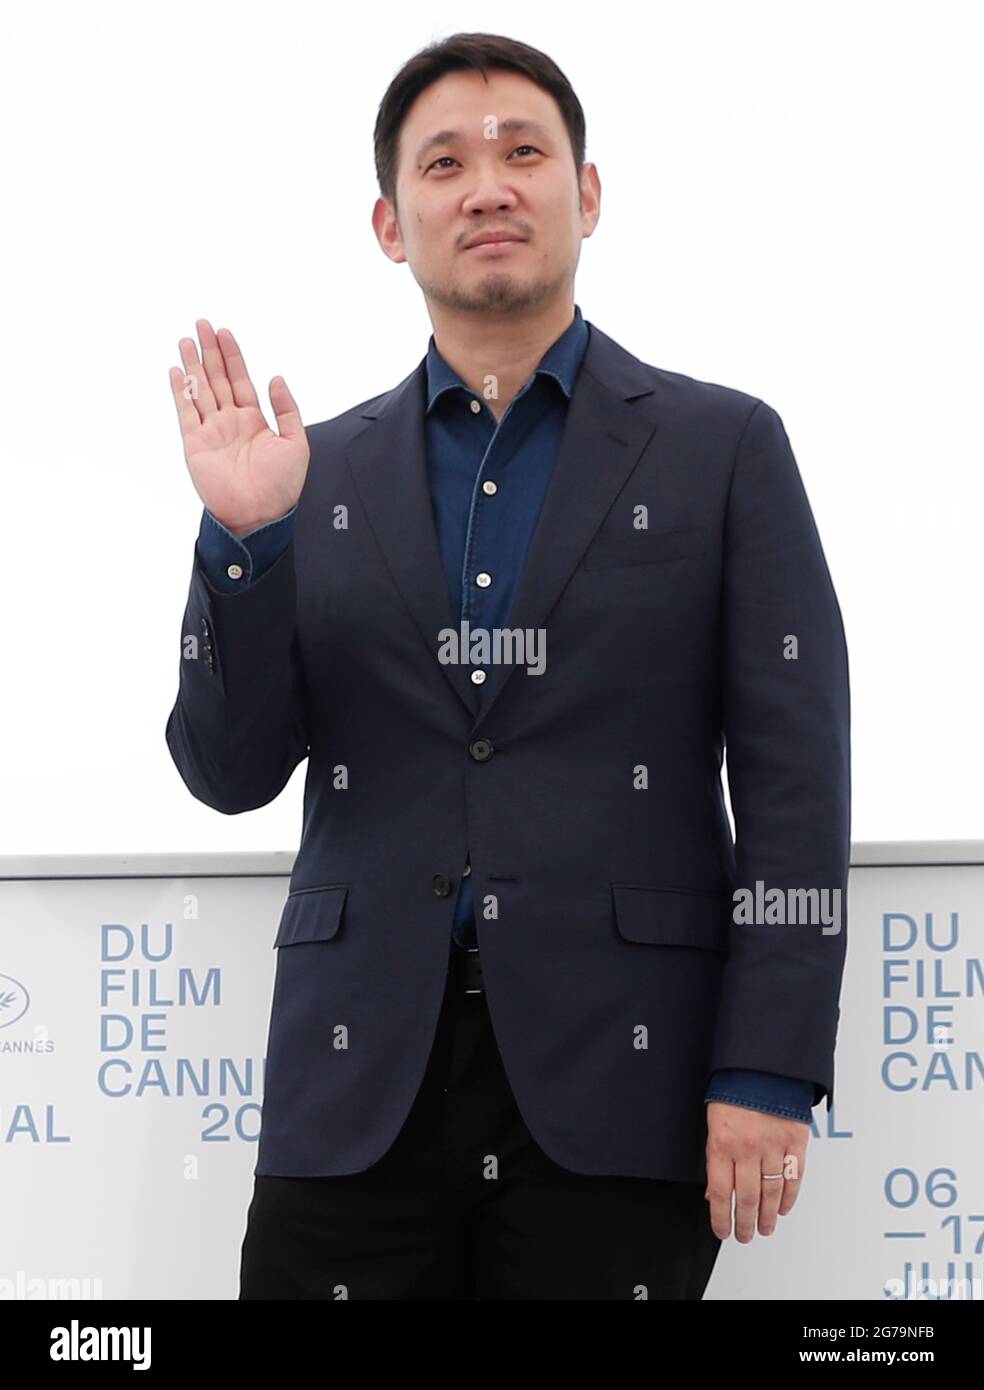 Cannes. Juli 2021. Regisseur Ruysuke Hamaguchi posiert während der Fotozelle für den Film „Drive My Car“ beim 74. Jährlichen Filmfestival in Cannes, Frankreich, am 12. Juli 2021. Quelle: Xinhua/Alamy Live News Stockfoto